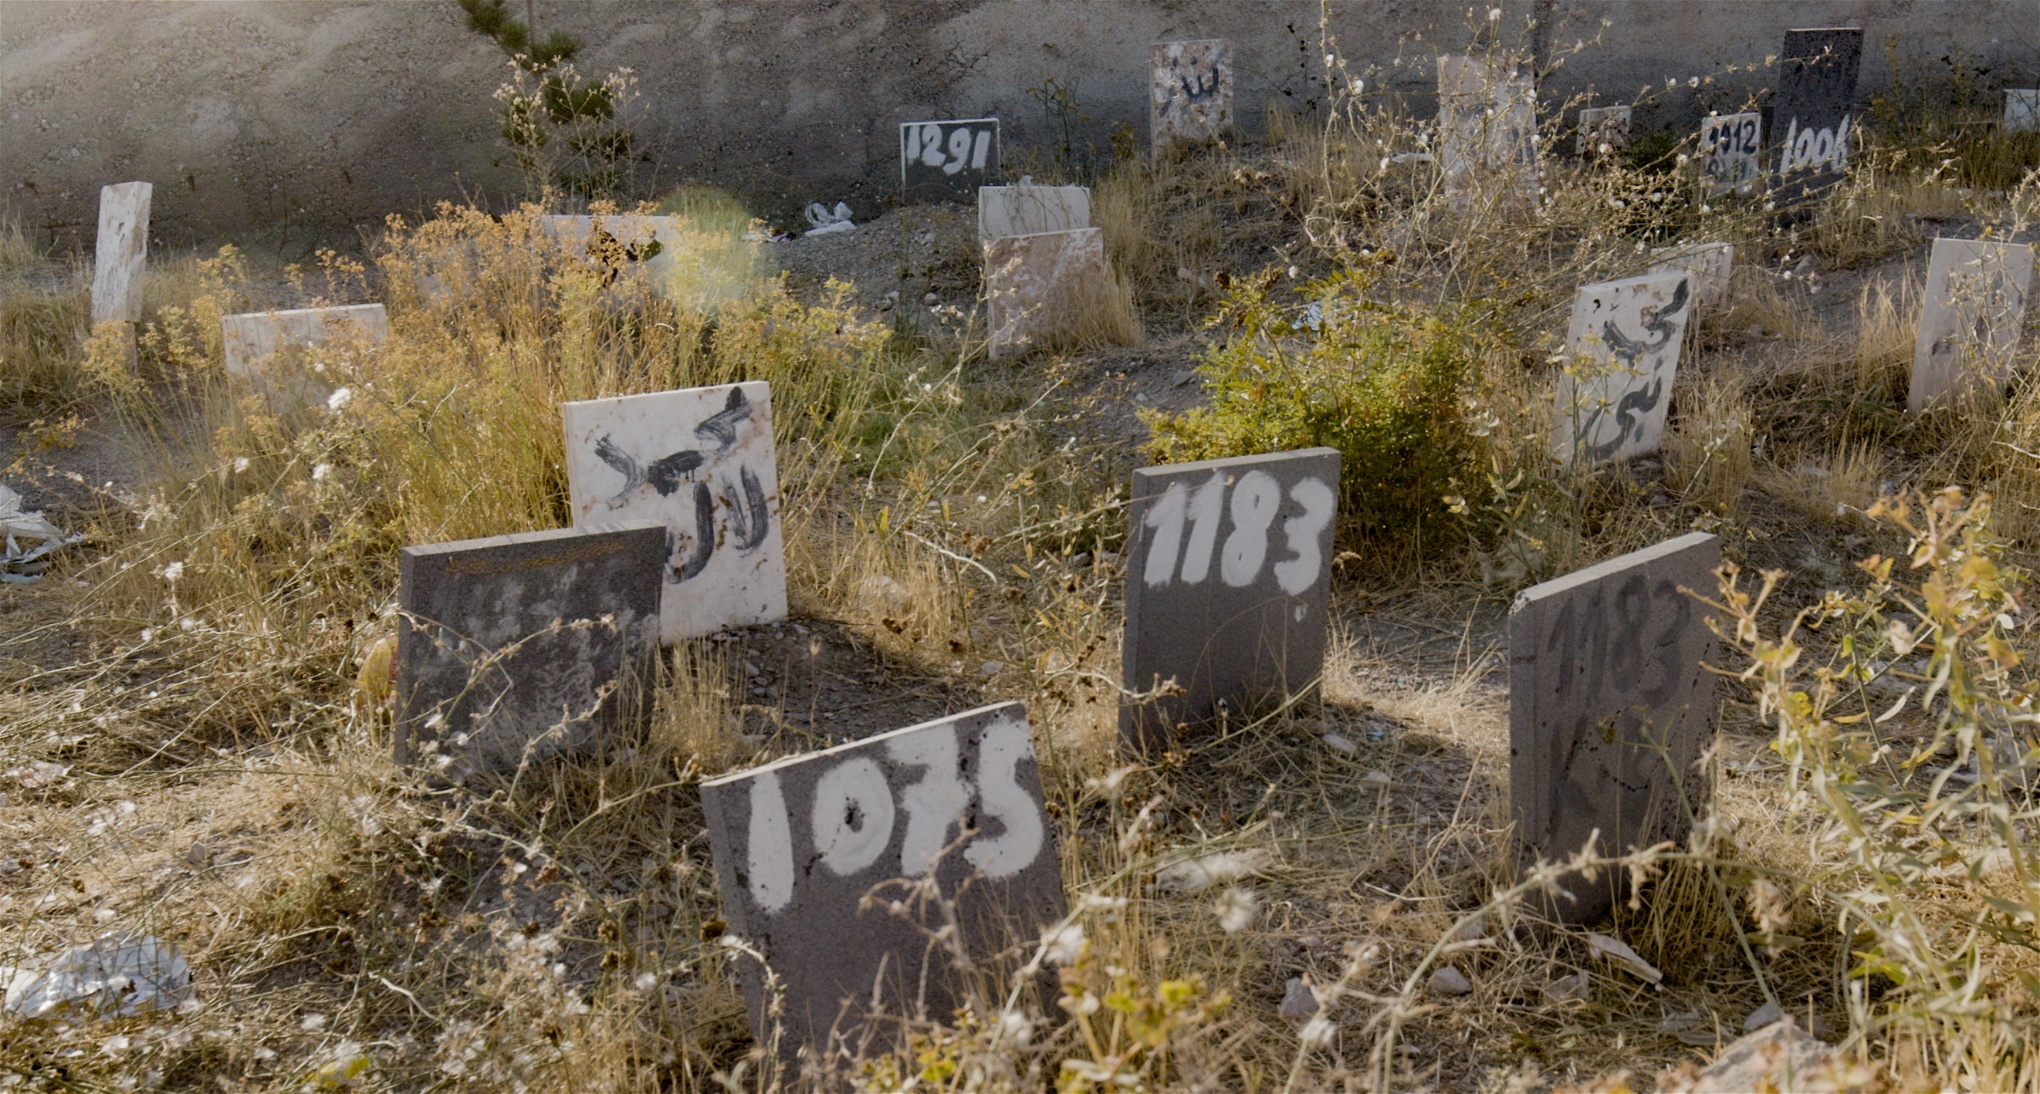 I utkanten av staden Van ligger de namnlösas kyrkogård. Flertal gravar tillhör barn. Foto: Sebastian Peña